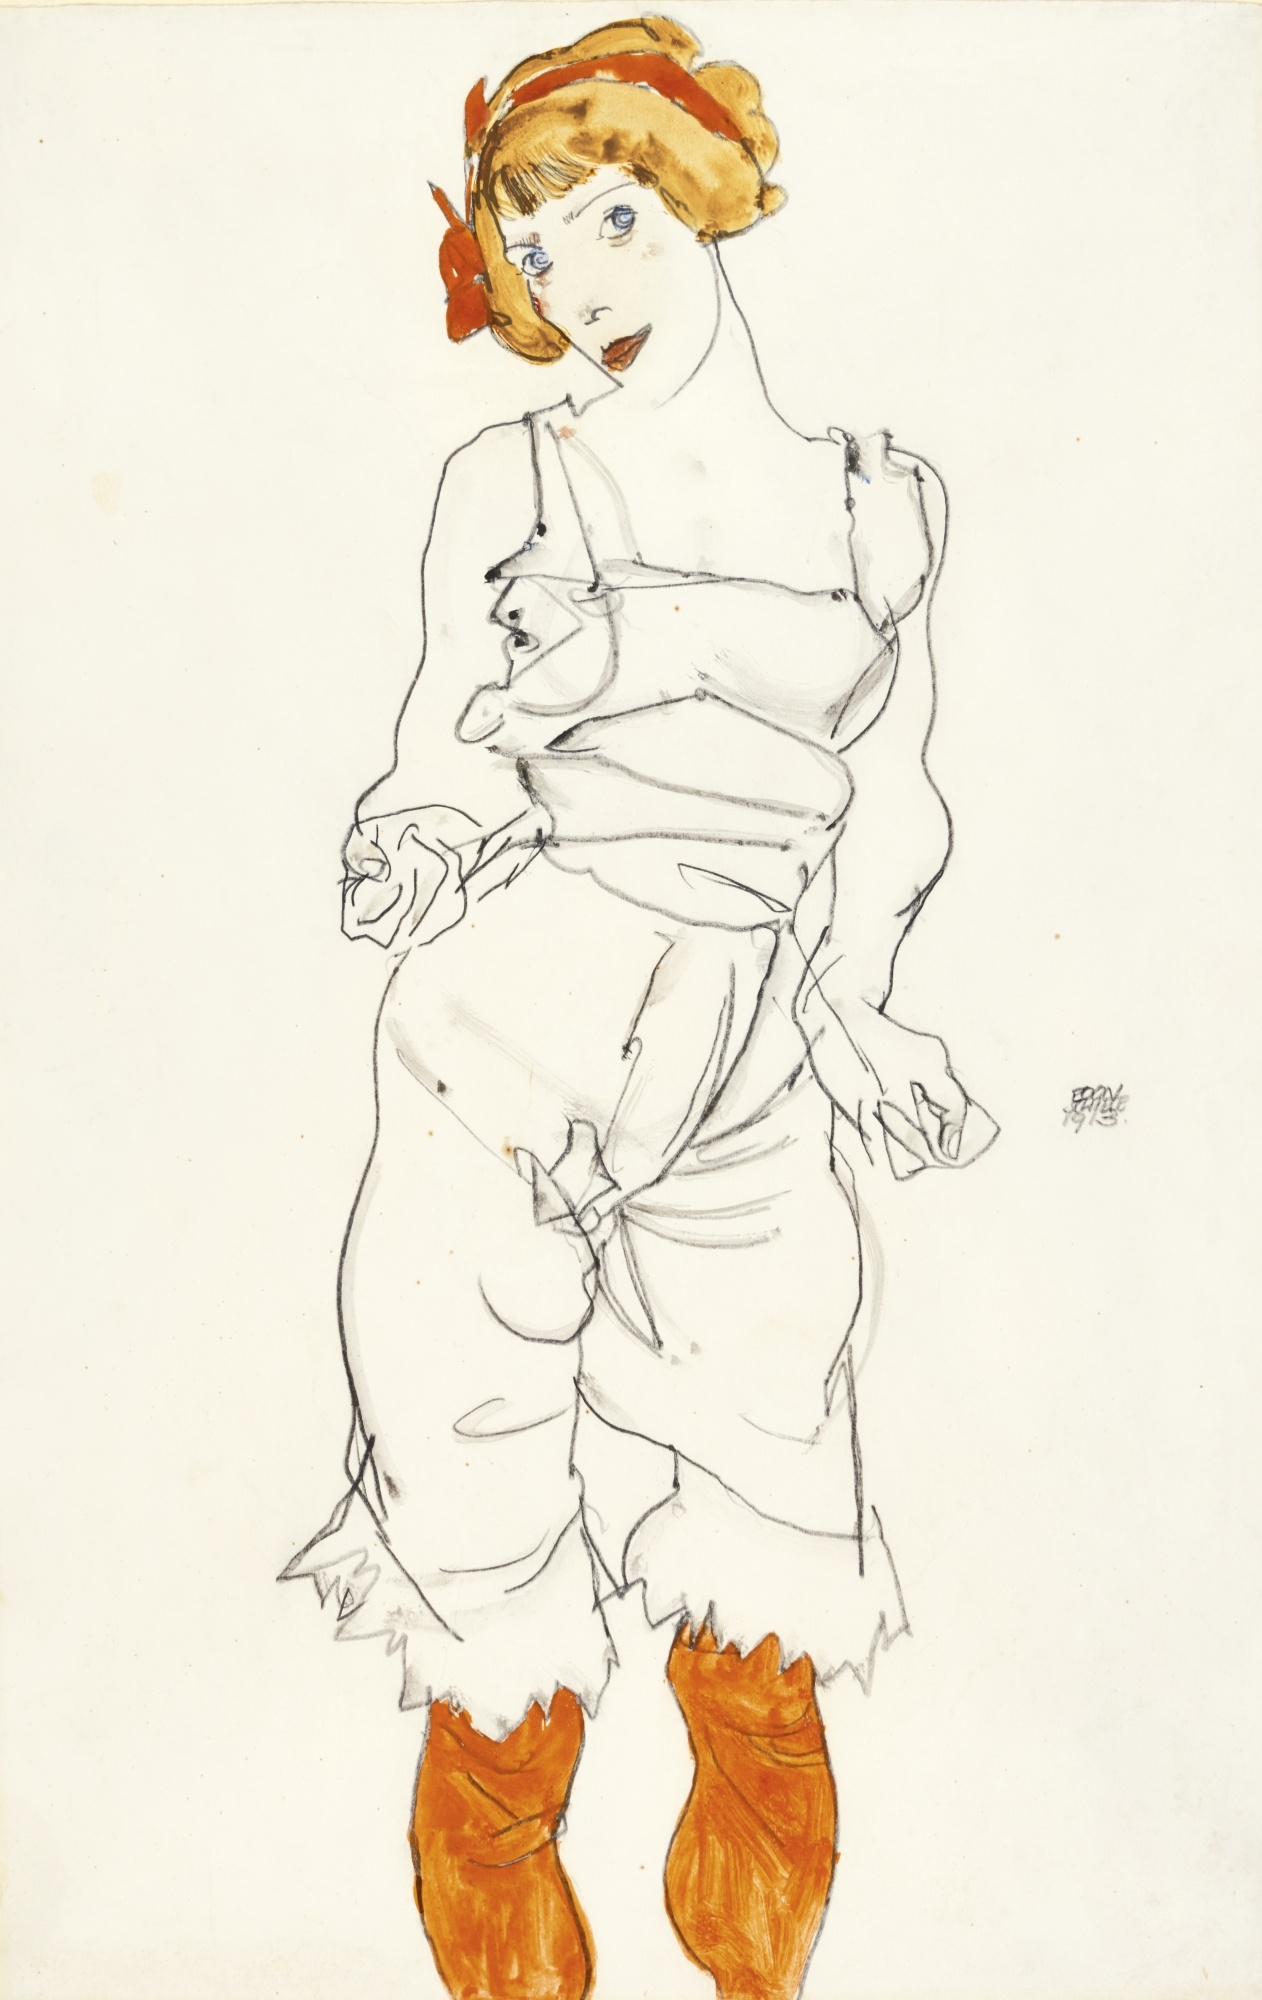 FRAU IN UNTERWÄSCHE UND STRÜMPFEN (VALERIE NEUZIL) (WOMAN IN UNDERCLOTHES AND STOCKINGS) by Egon Schiele, 1913